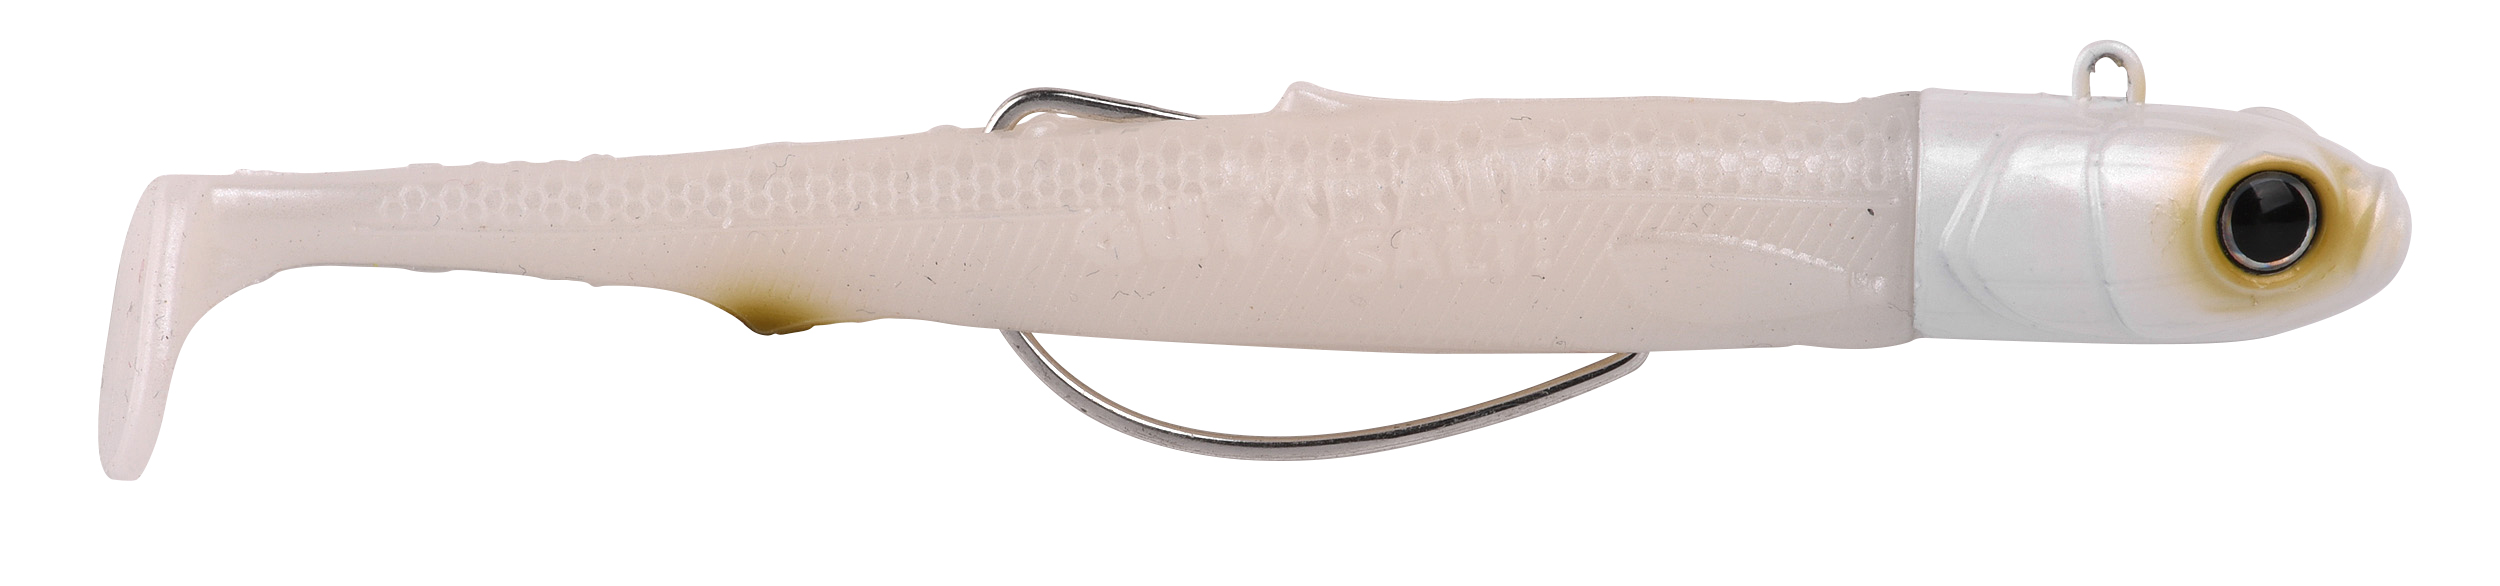 Spro Gutsbait Salt Sea Fish Softbait 8cm (7g) - White Minnow